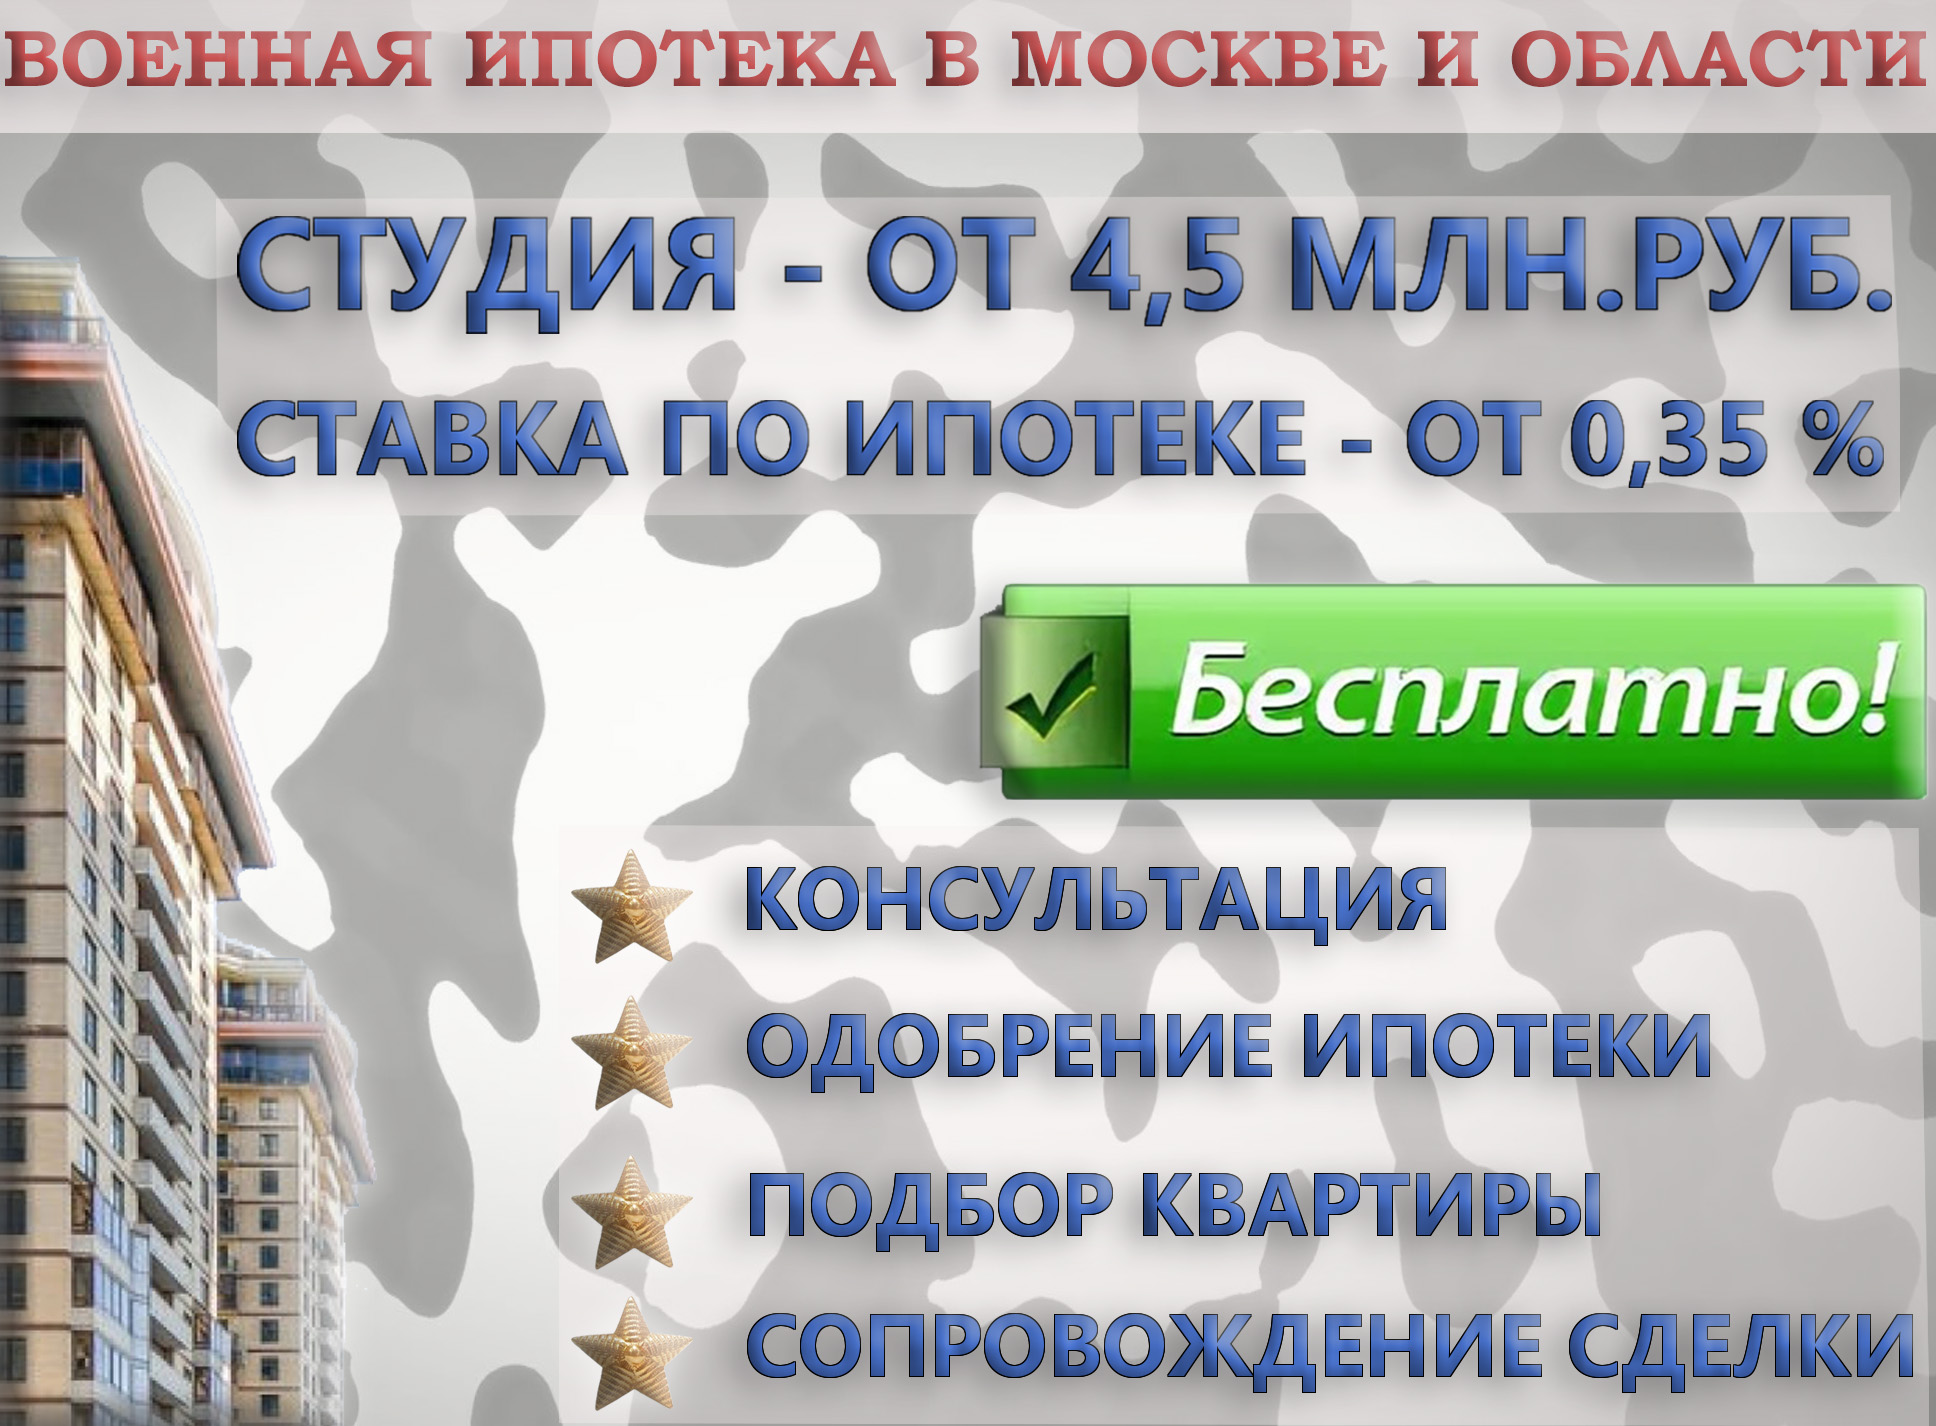 Подбор квартир и банков по военному сертификату - фотография